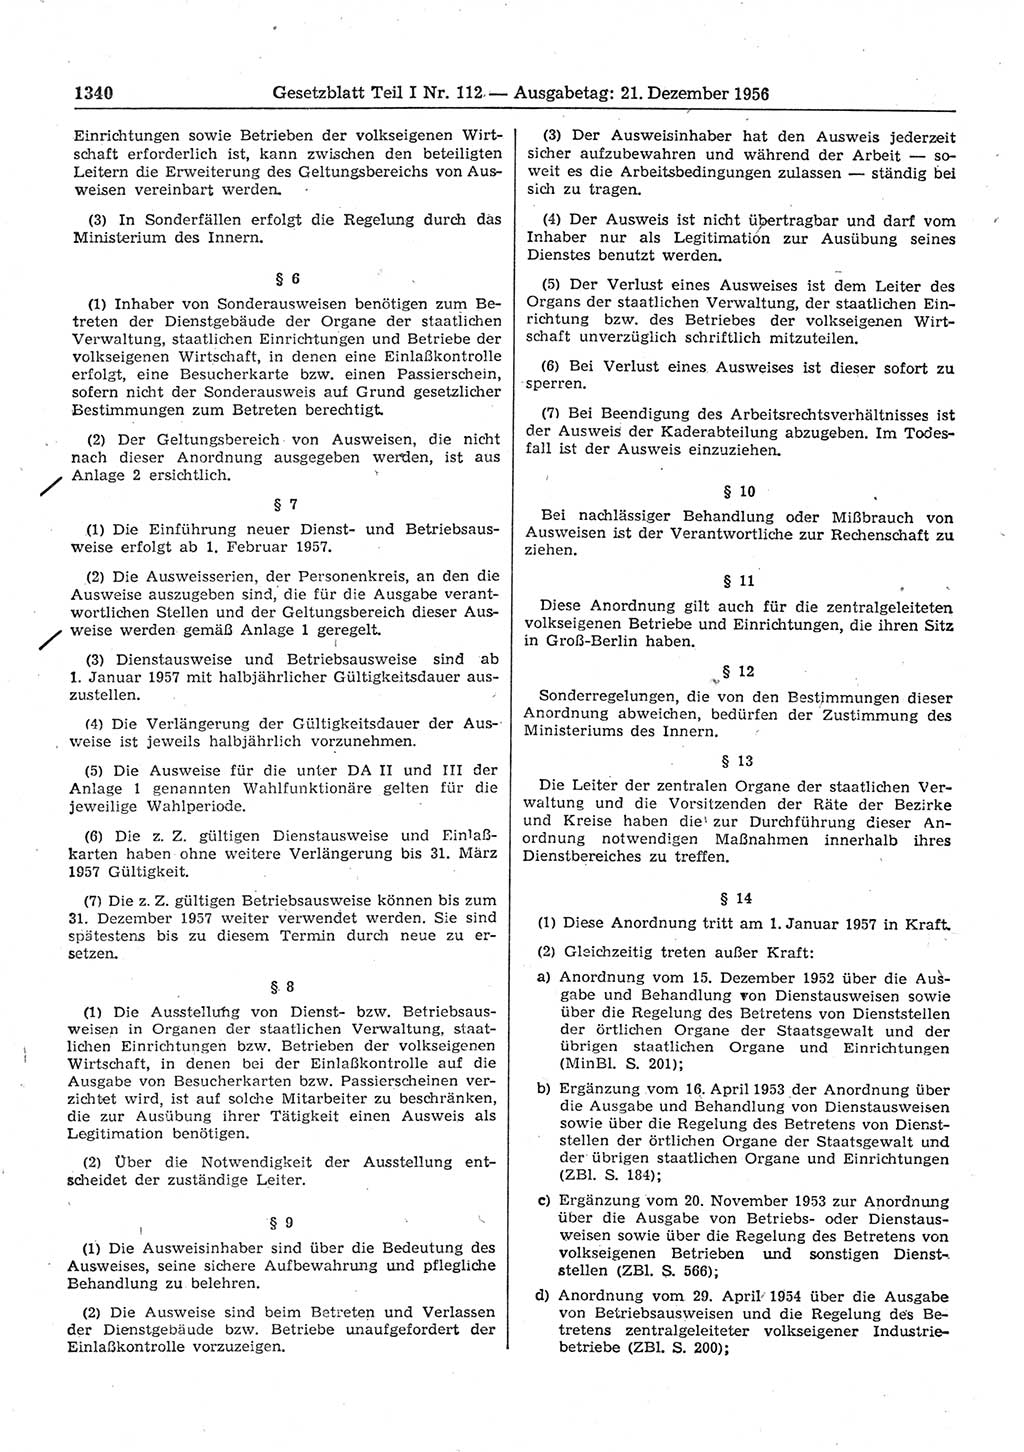 Gesetzblatt (GBl.) der Deutschen Demokratischen Republik (DDR) Teil Ⅰ 1956, Seite 1340 (GBl. DDR Ⅰ 1956, S. 1340)